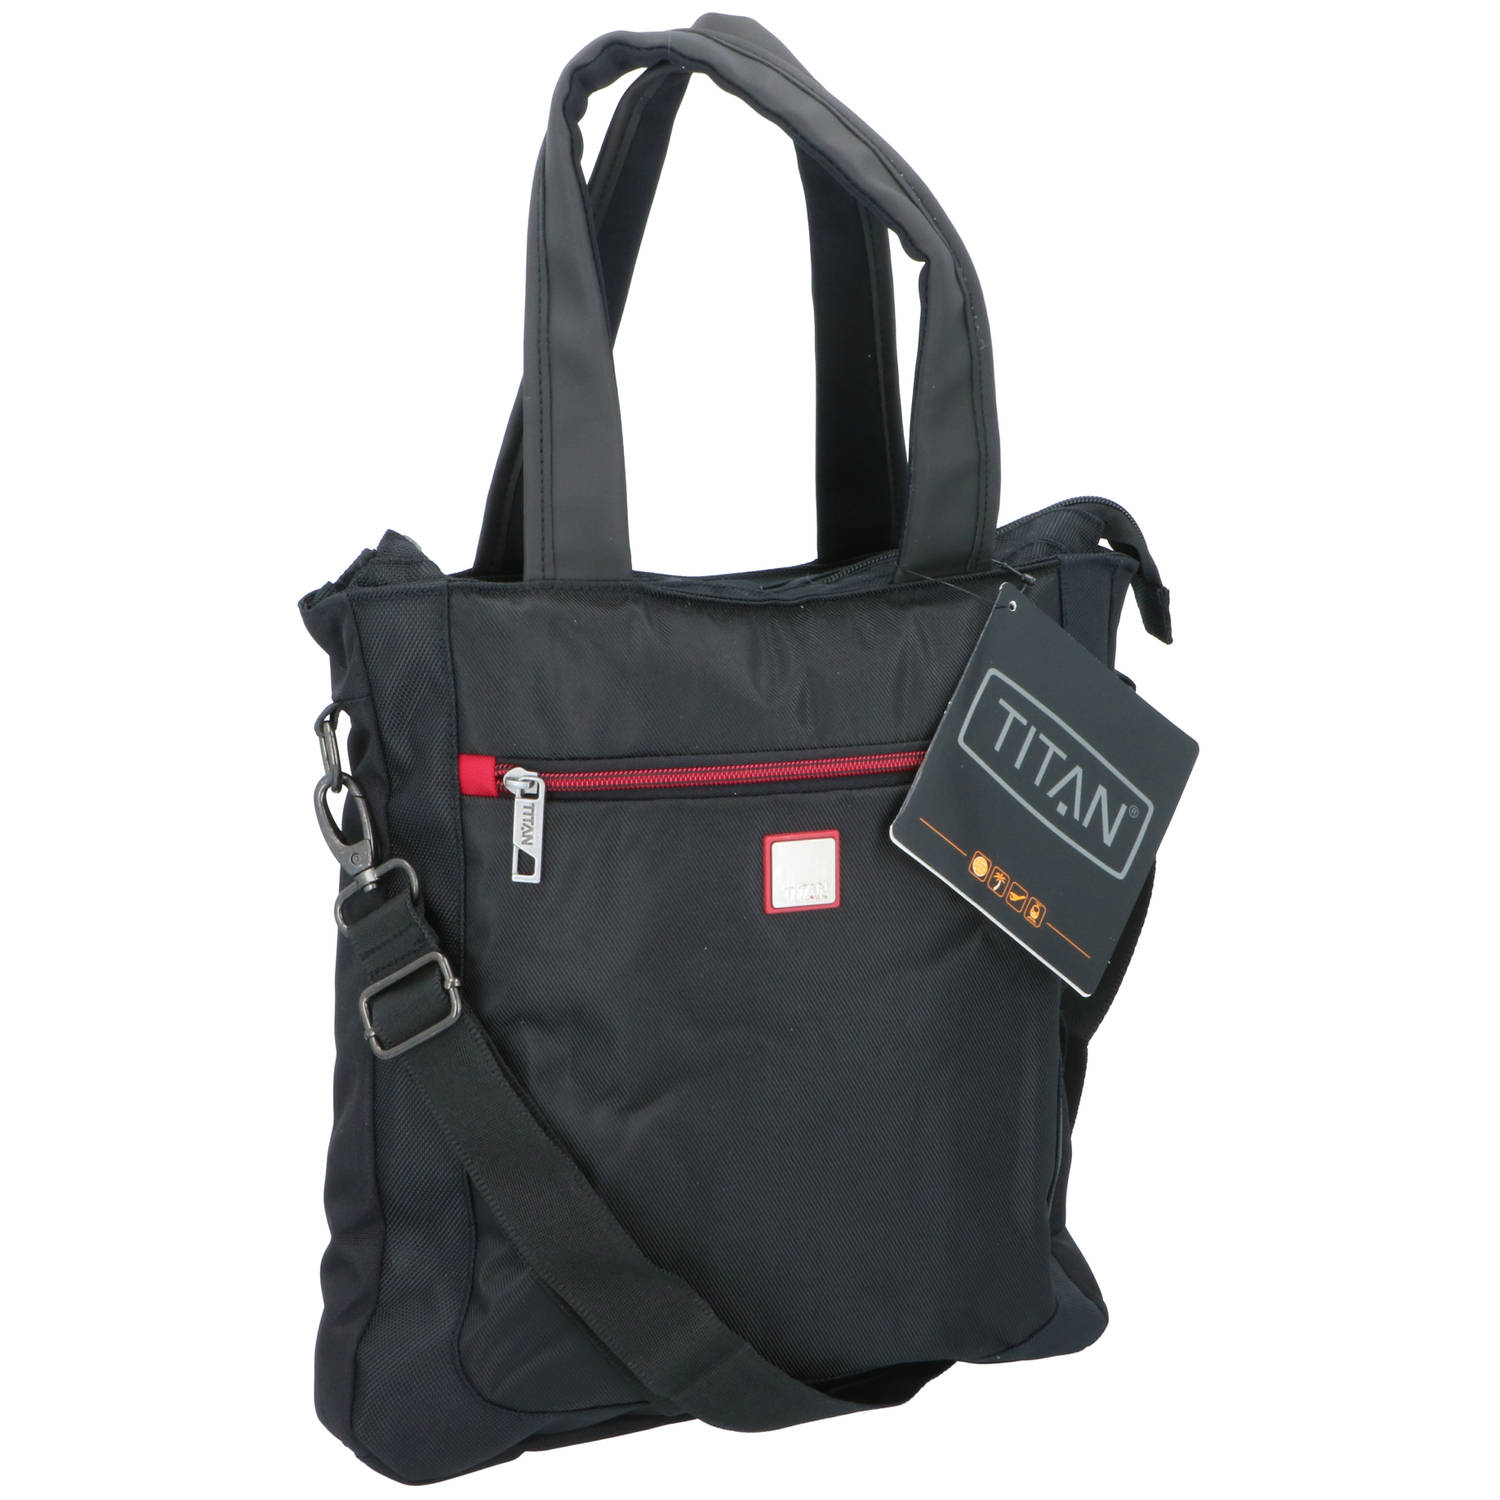 Titan Schoudertas met Rits - Tote Bag - 33,5 x 6,5 x 33,5 CM - Hoofd- en Voor Vak met Rits - Ideaal voor Werk en Reizen - Zwart/Rood